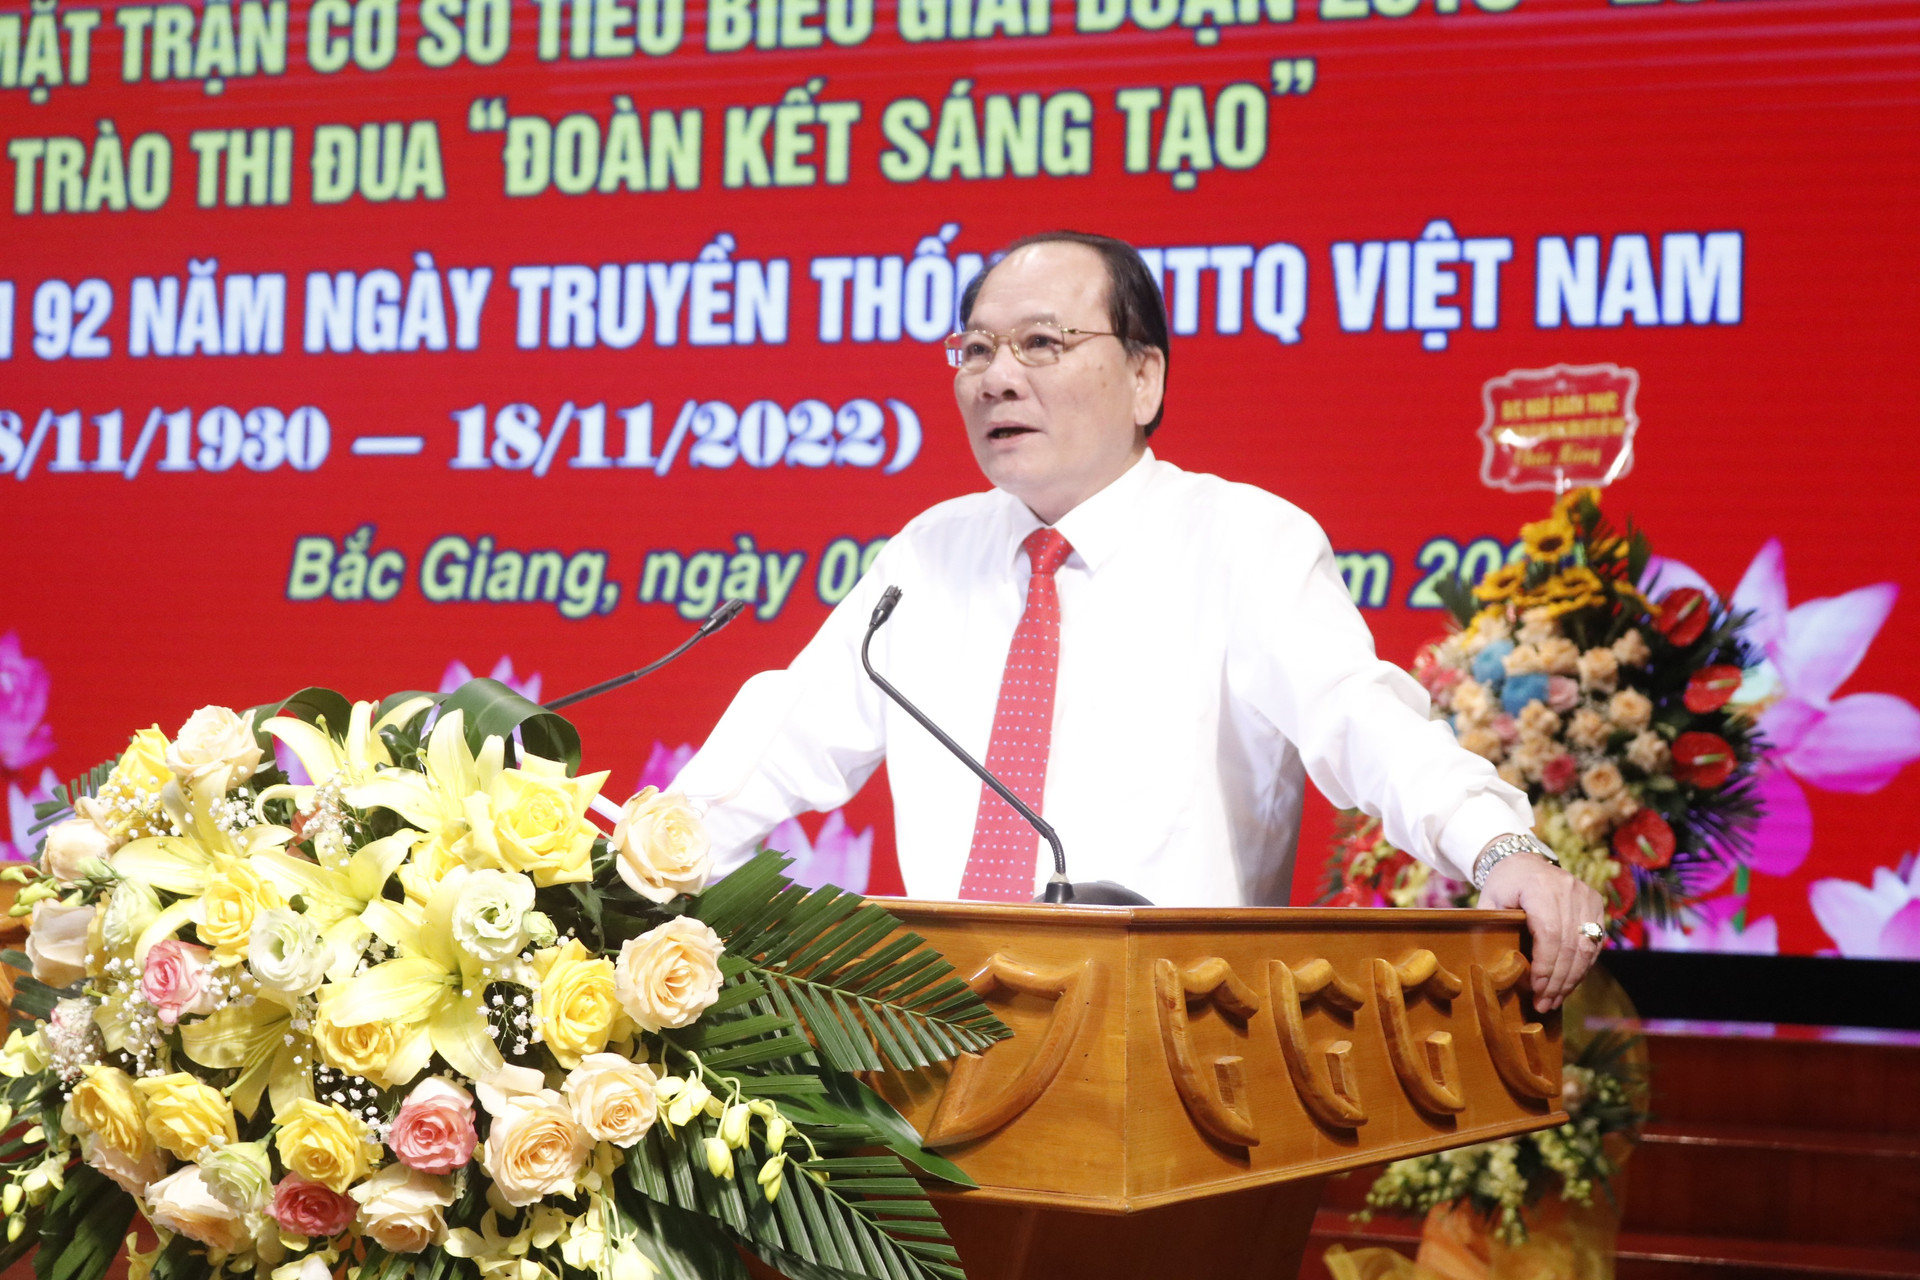 Ông Trần Cong Thắng, Chủ tịch Ủy ban MTTQ tỉnh Bắc Giang phát biểu tại hội nghị.